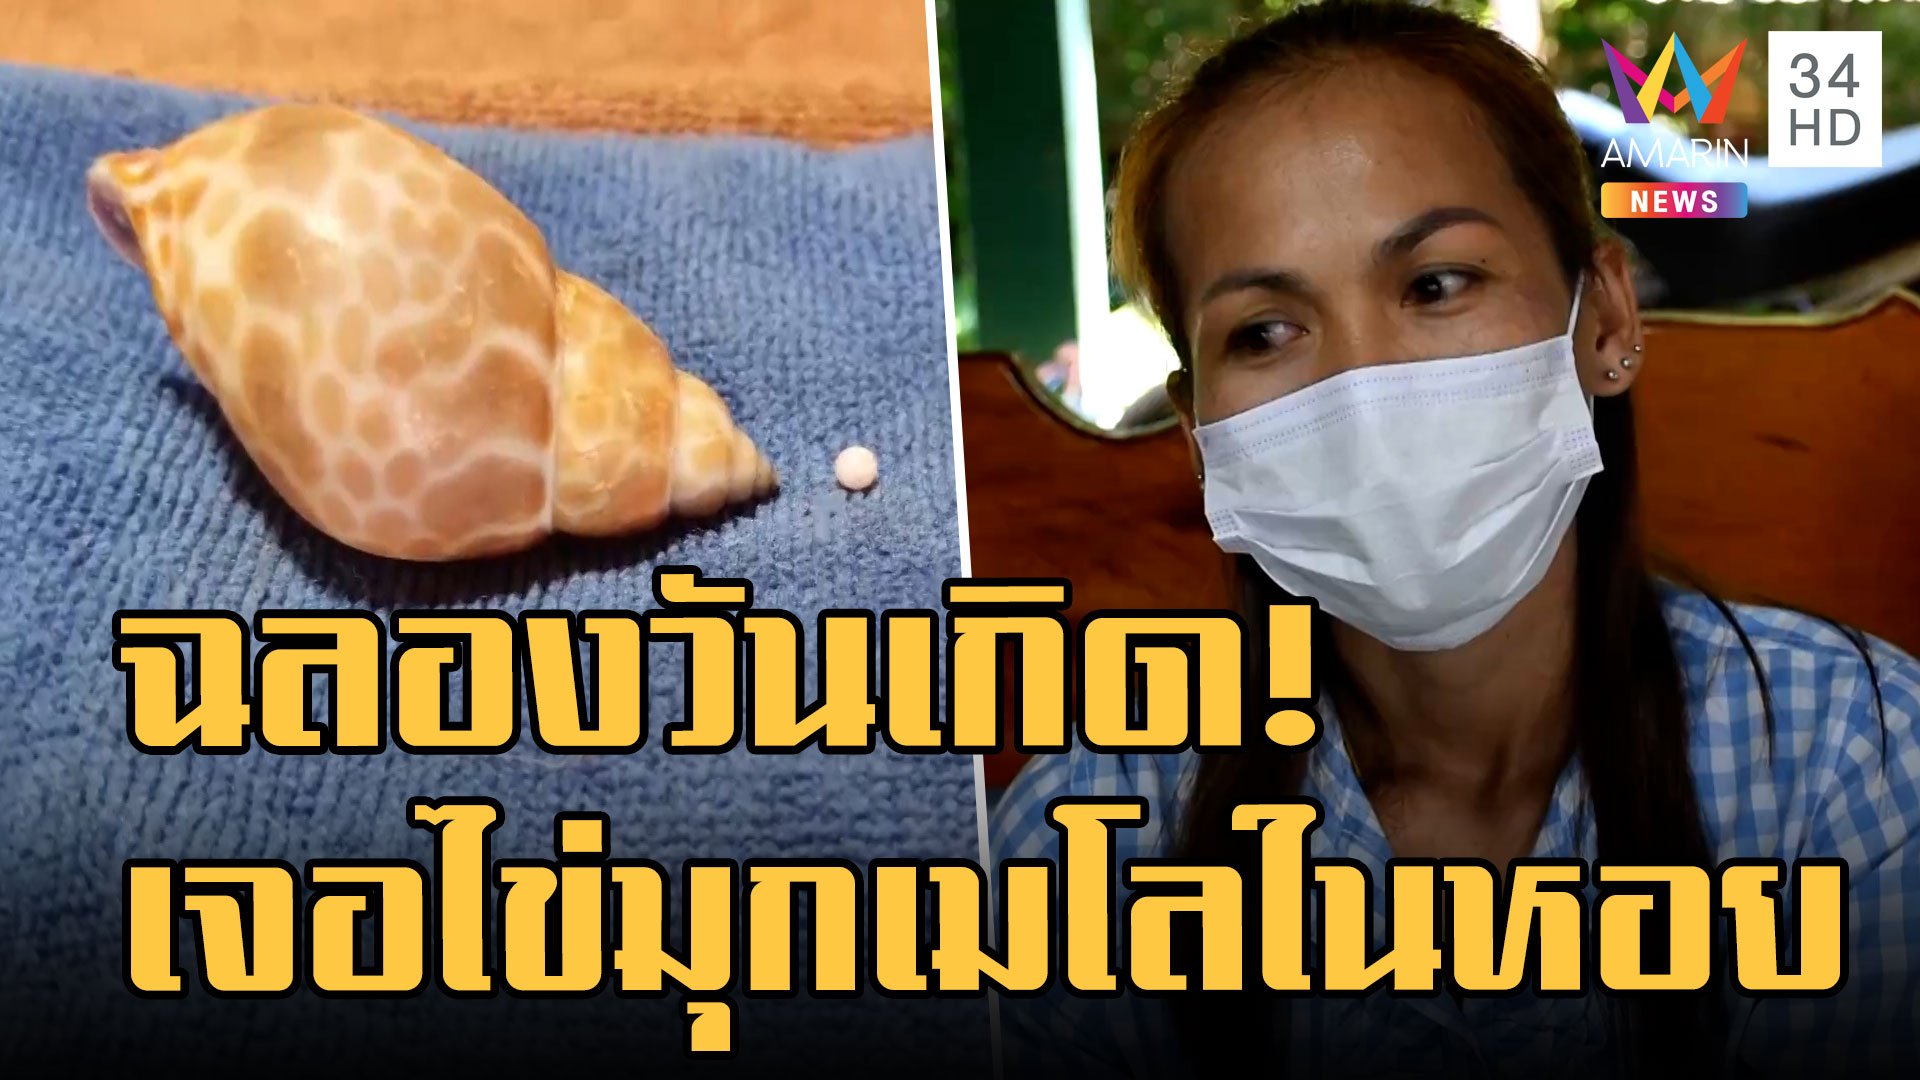 ซื้อหอยฉลองวันเกิด เจอไข่มุกเมโลอยู่ในหอยหวาน  | ข่าวเที่ยงอมรินทร์ | 29 ส.ค. 65 | AMARIN TVHD34